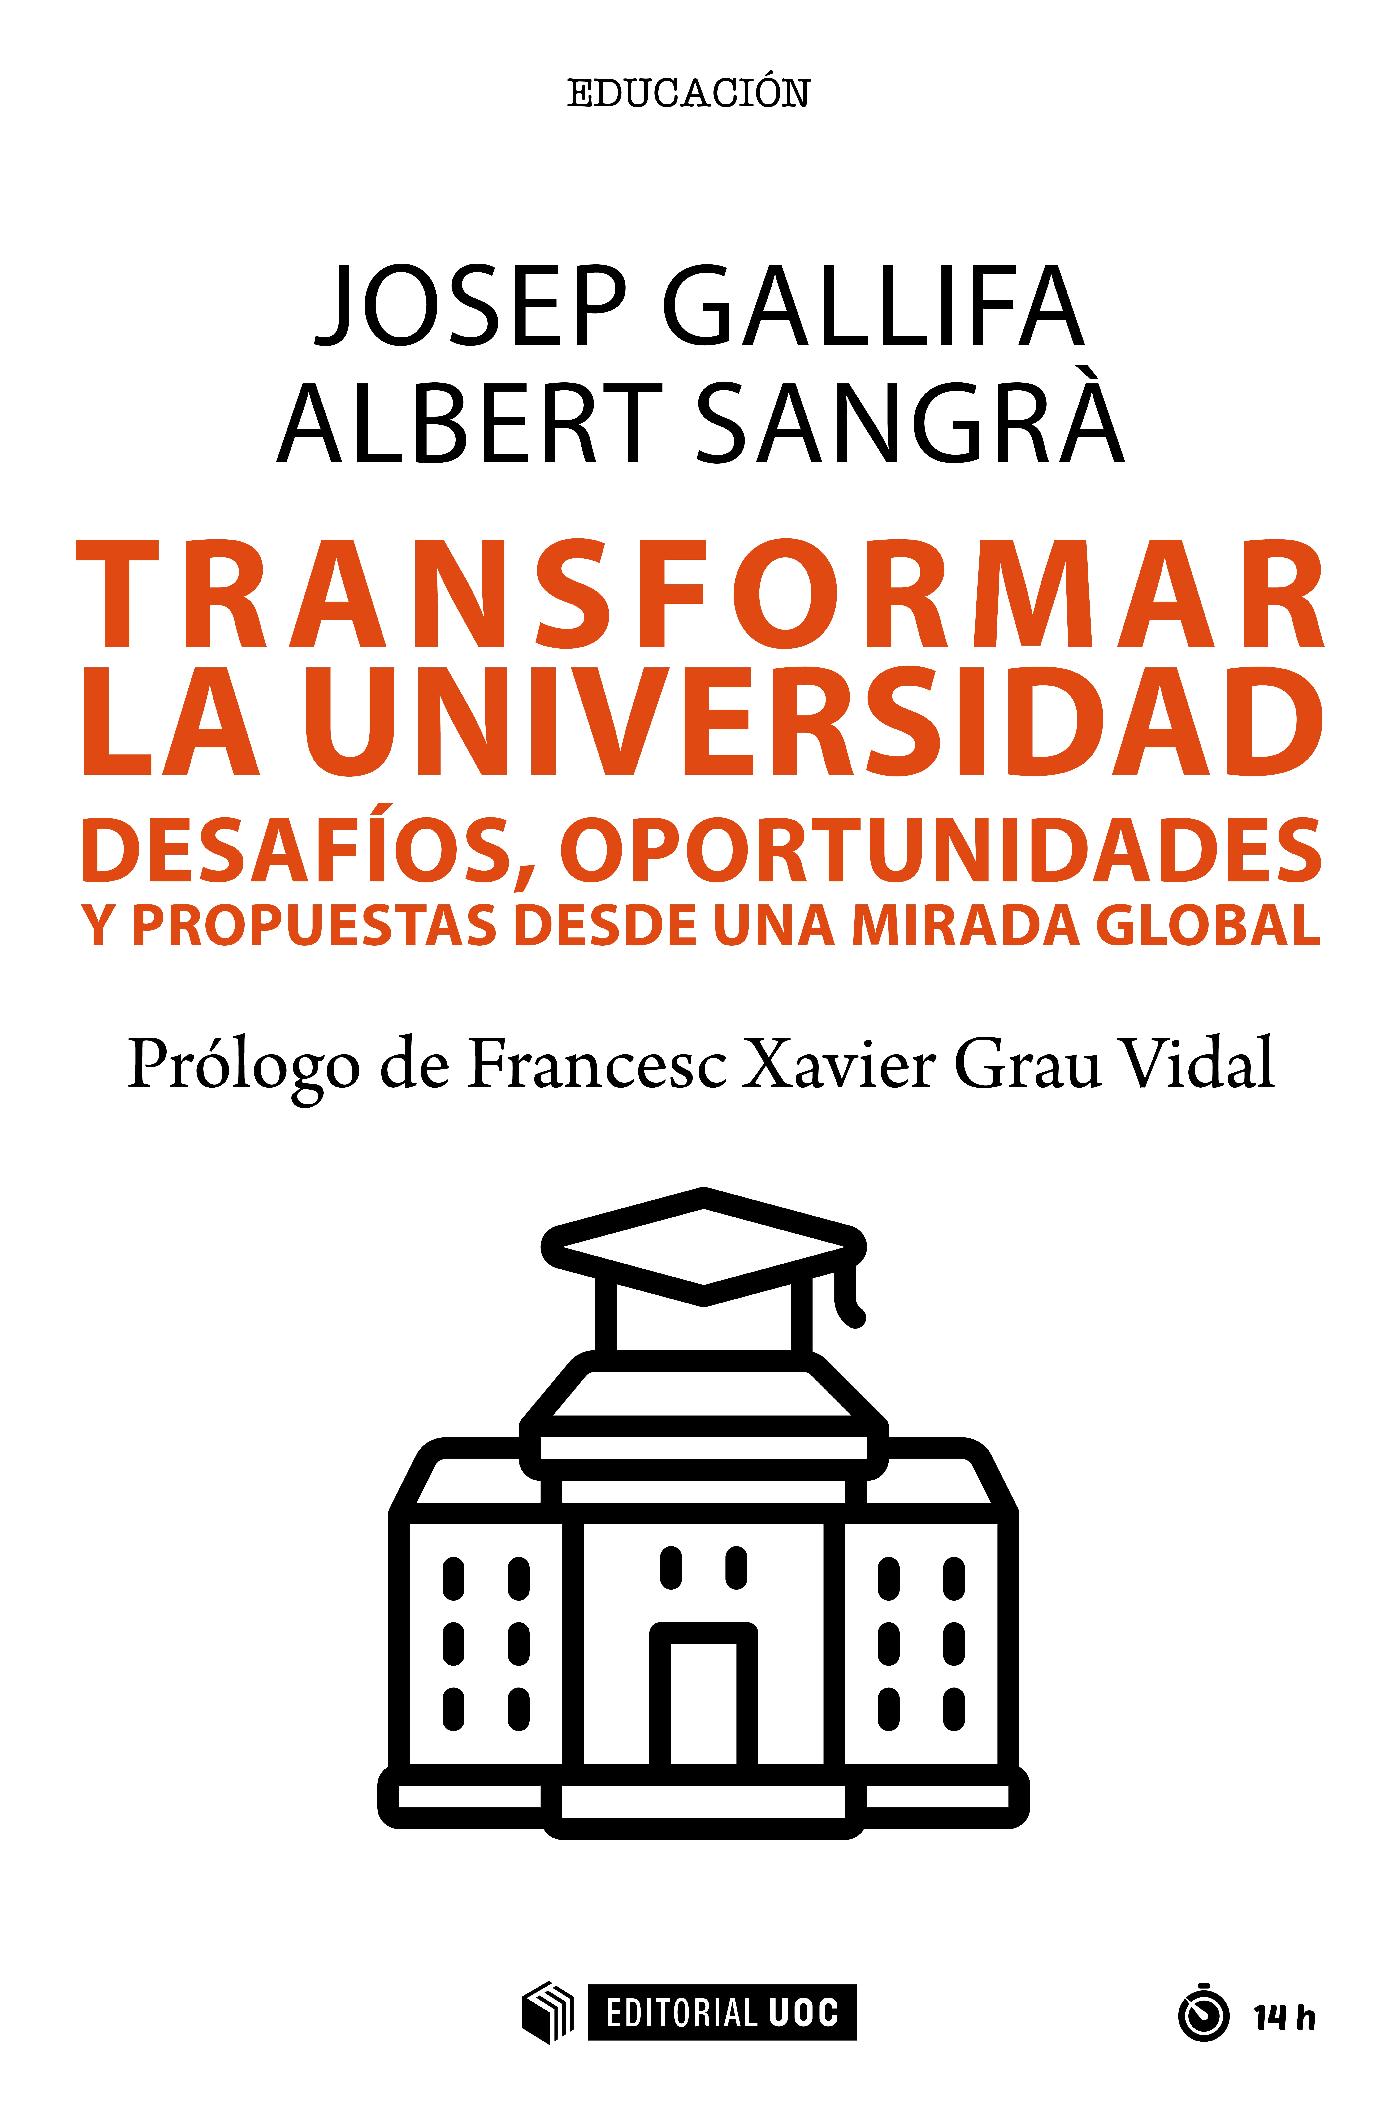 Reciente Publicación: Transformar La Universidad. Desafíos, Oportunidades Y Propuestas Desde Una Mirada Global. Josep Gallifa Y Albert Sangrà.